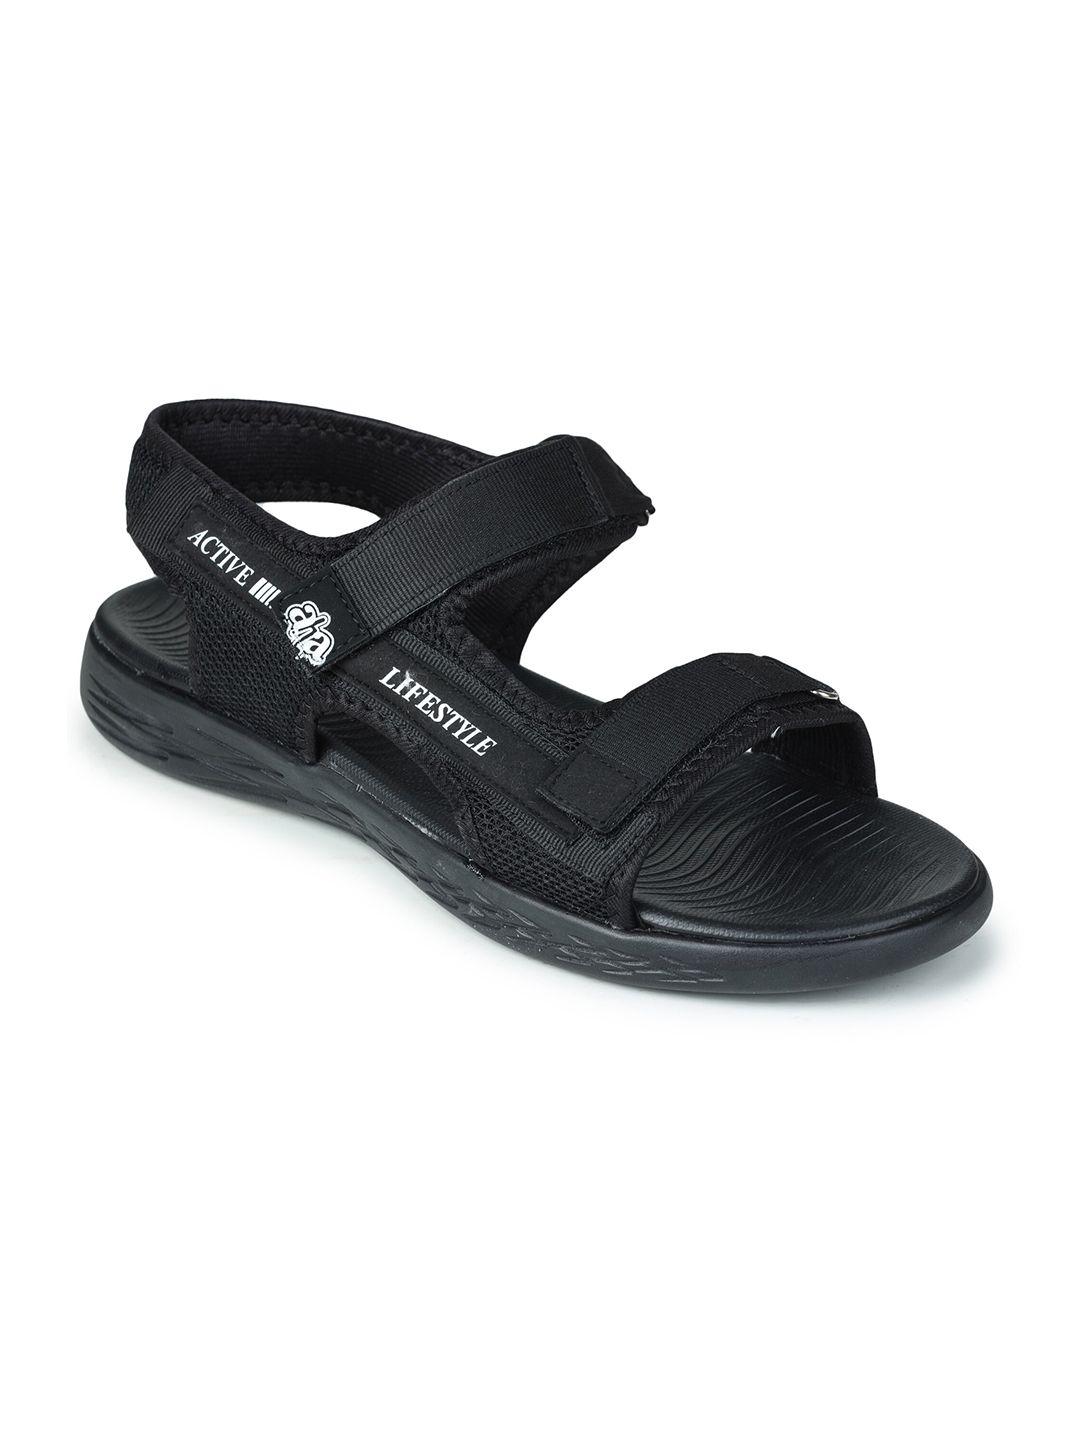 liberty men black pu comfort sandals